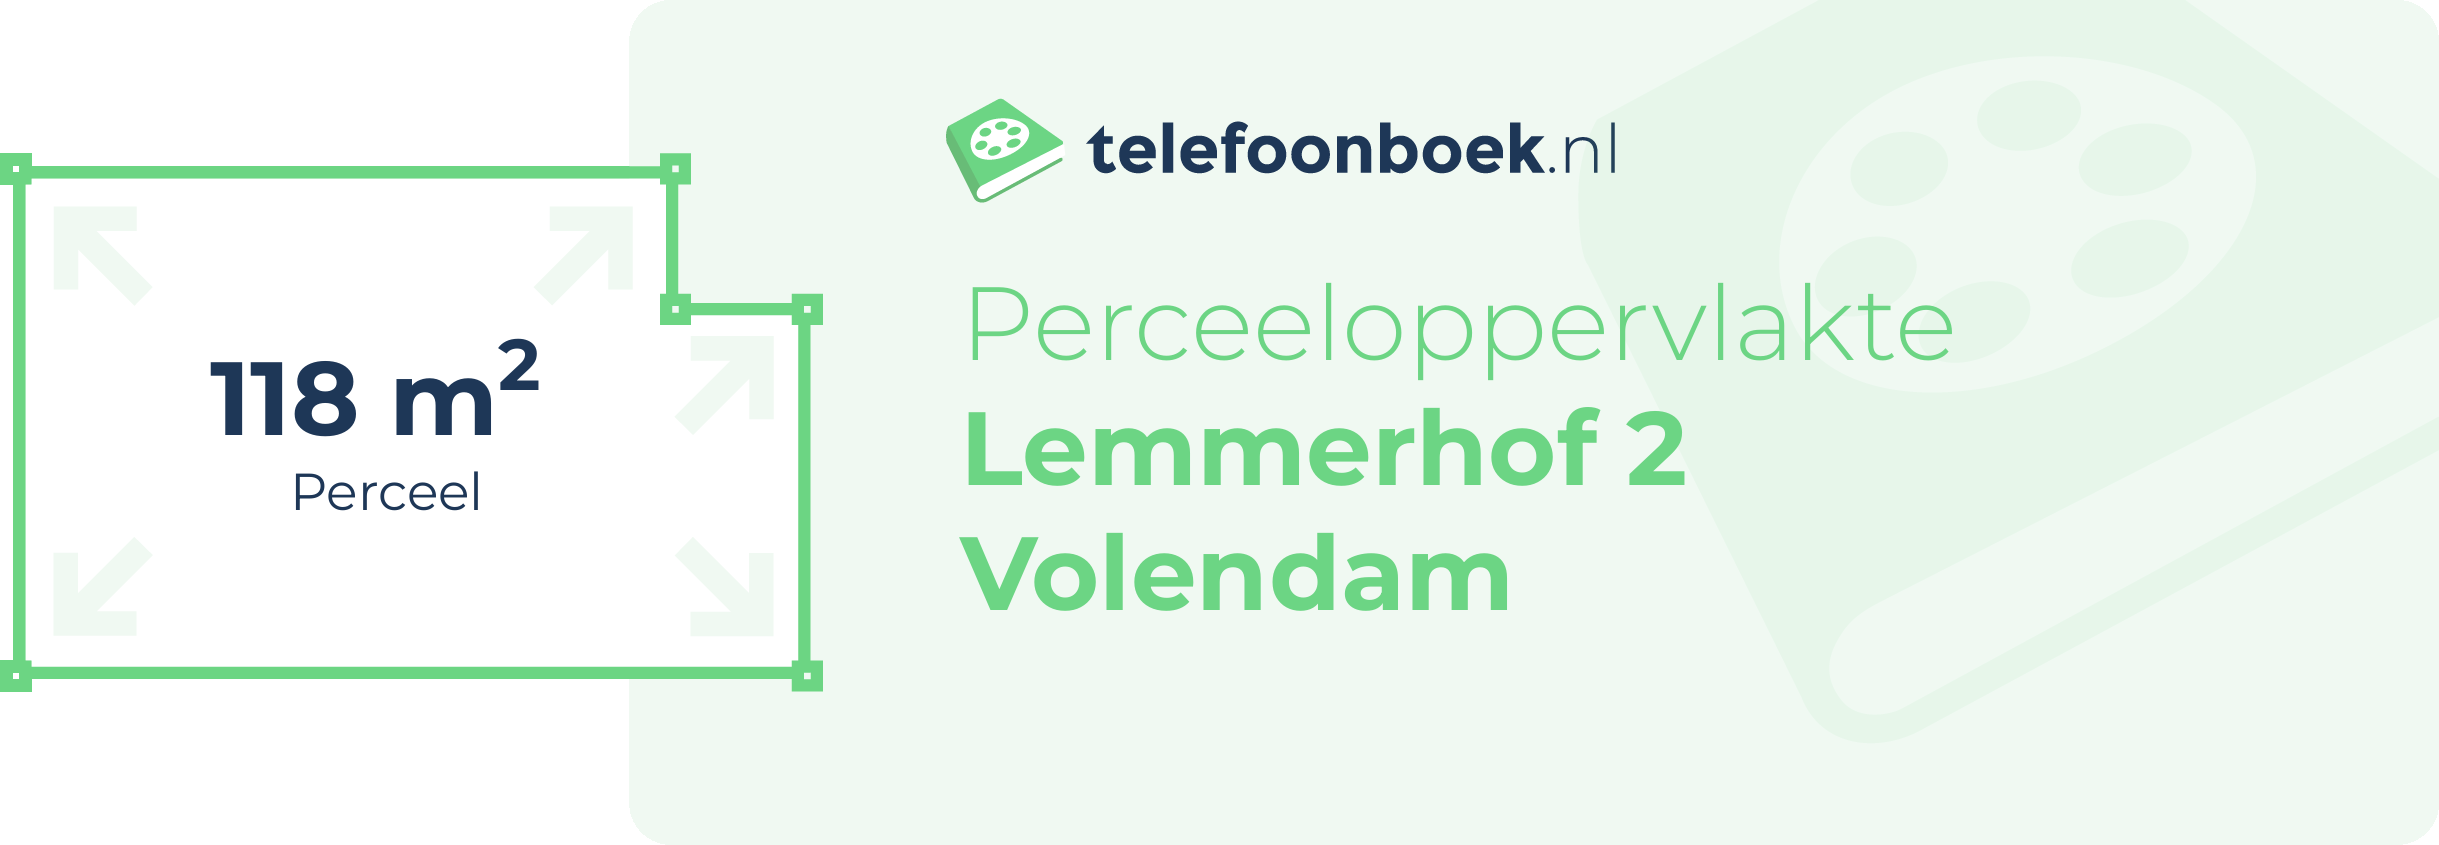 Perceeloppervlakte Lemmerhof 2 Volendam